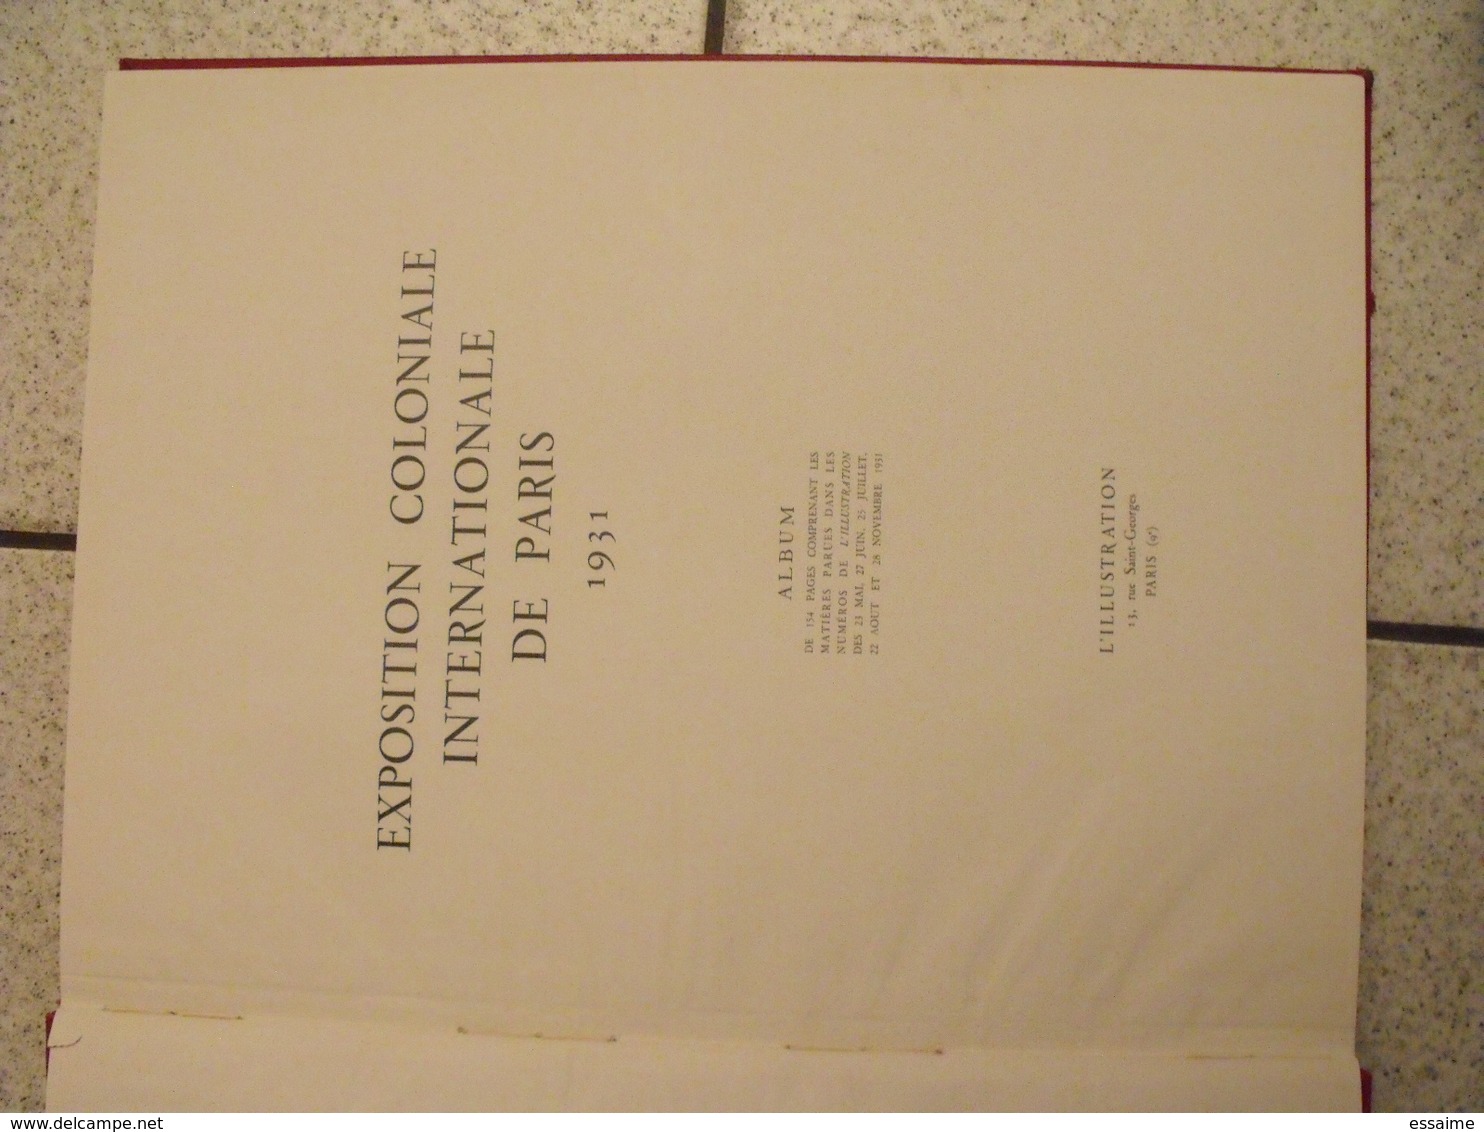 album de l'exposition coloniale de Paris - 1931. l'illustration. nombreuses photos + dessins aquarelle. belle reliure